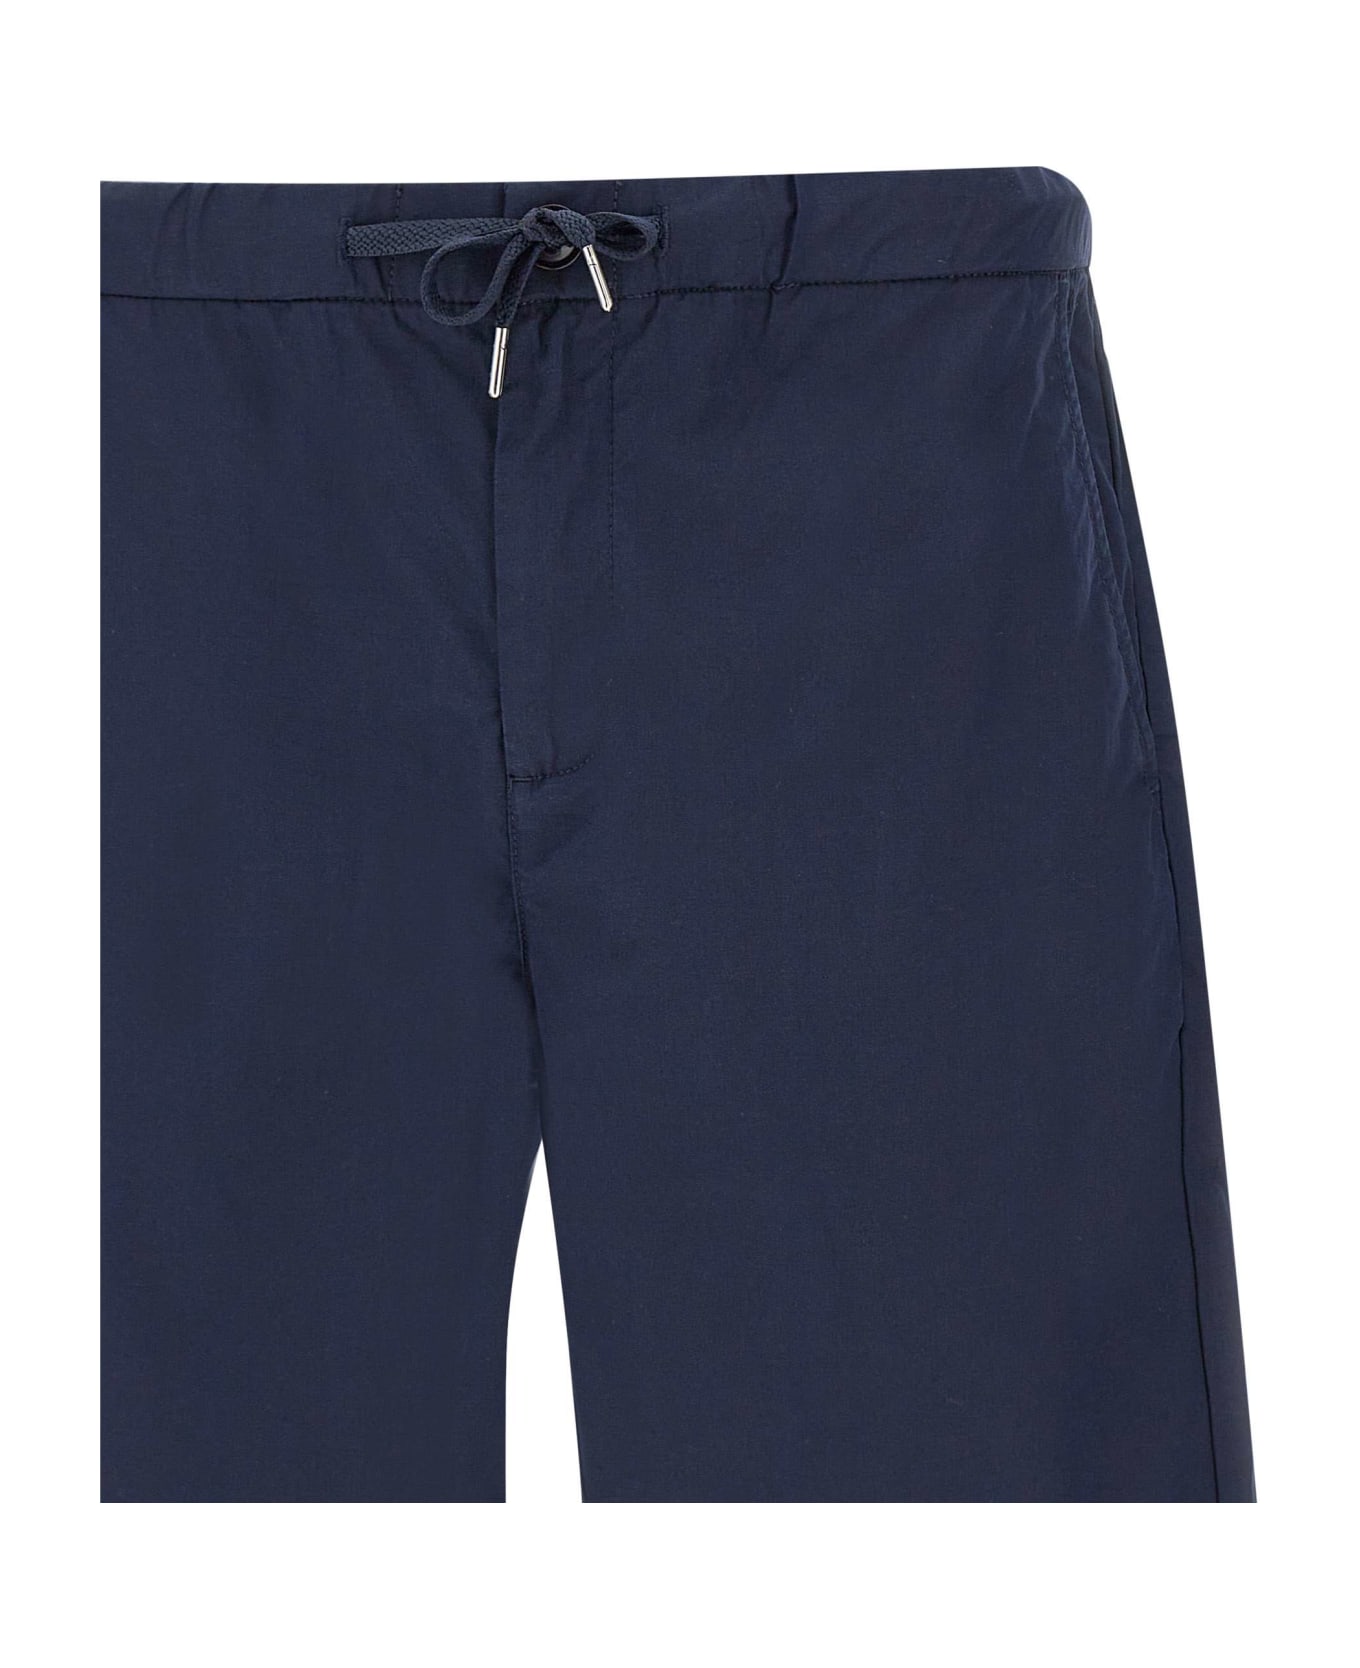 Sun 68 Shorts In Cotton - Blue